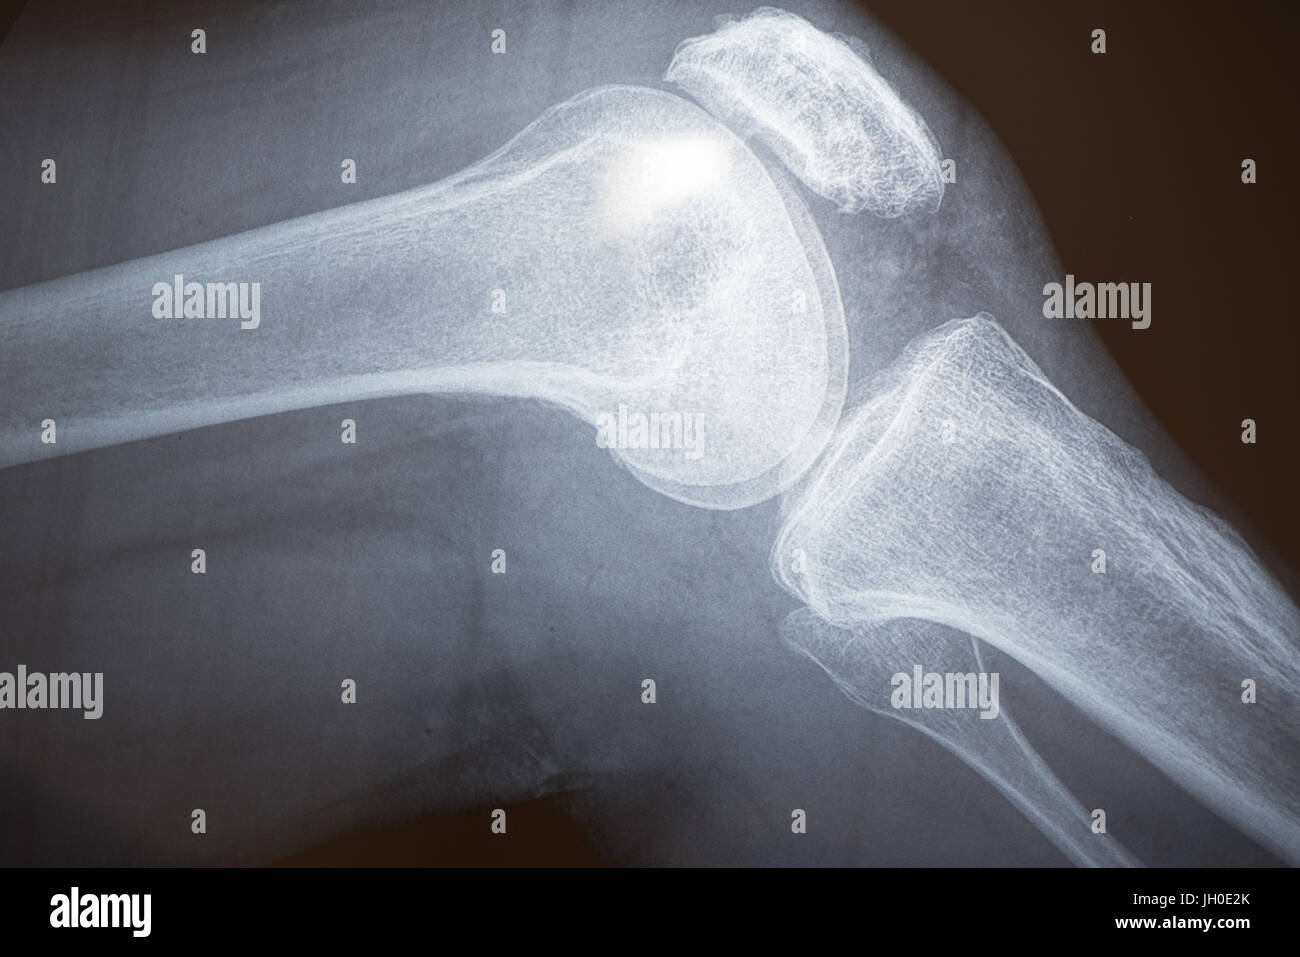 Xray image of knee bones Stock Photo - Alamy